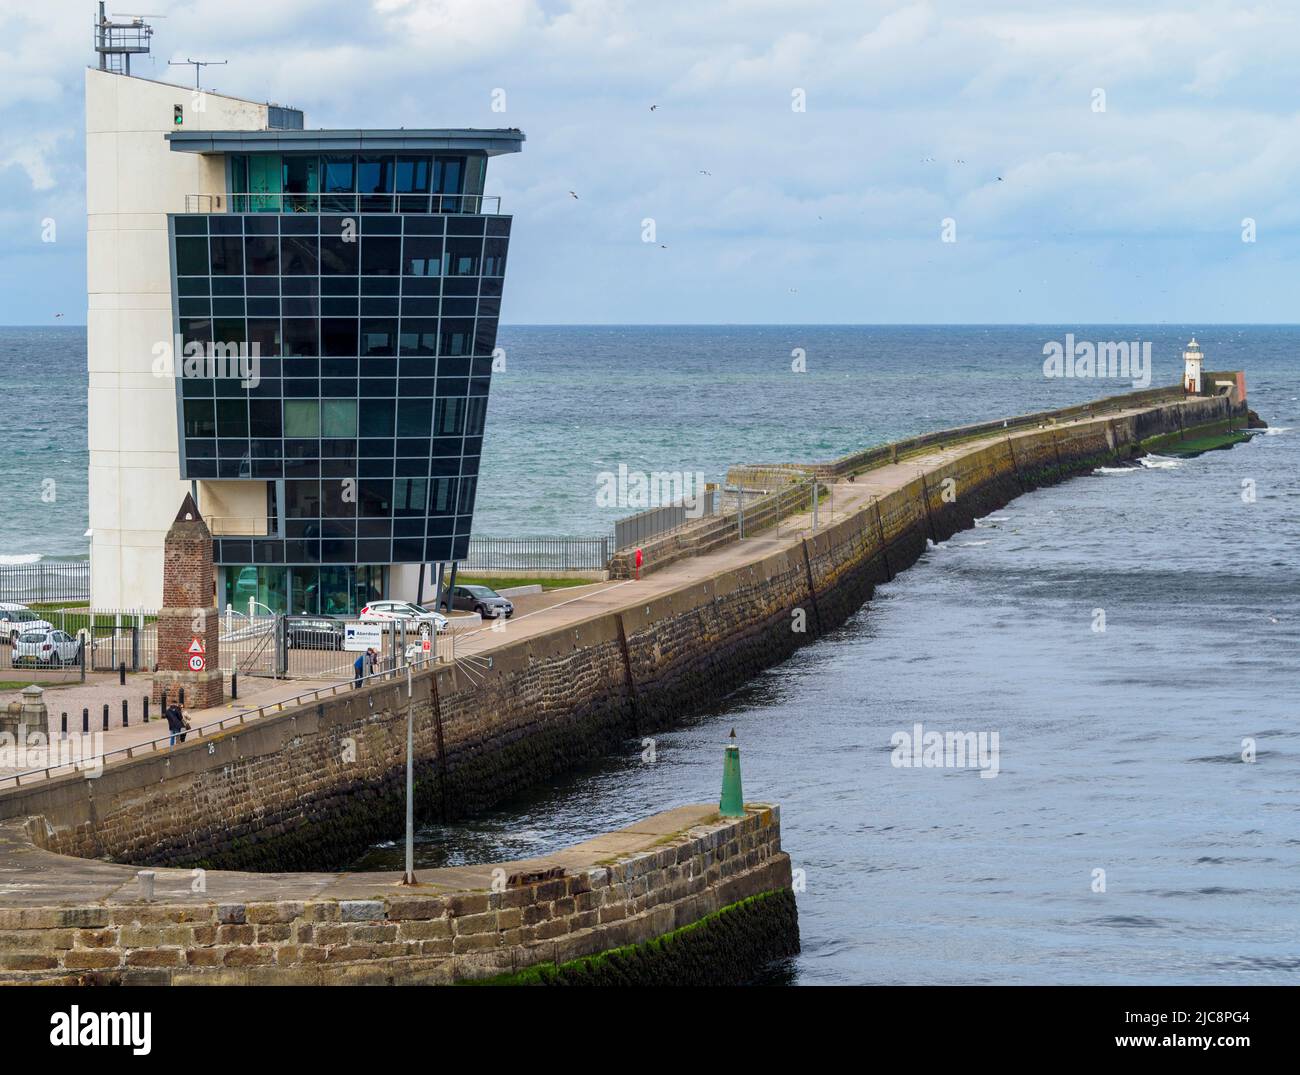 Vue sur le centre des opérations maritimes d'Aberdeen Harbour depuis le pont d'observation d'un ferry qui quitte le port. Banque D'Images